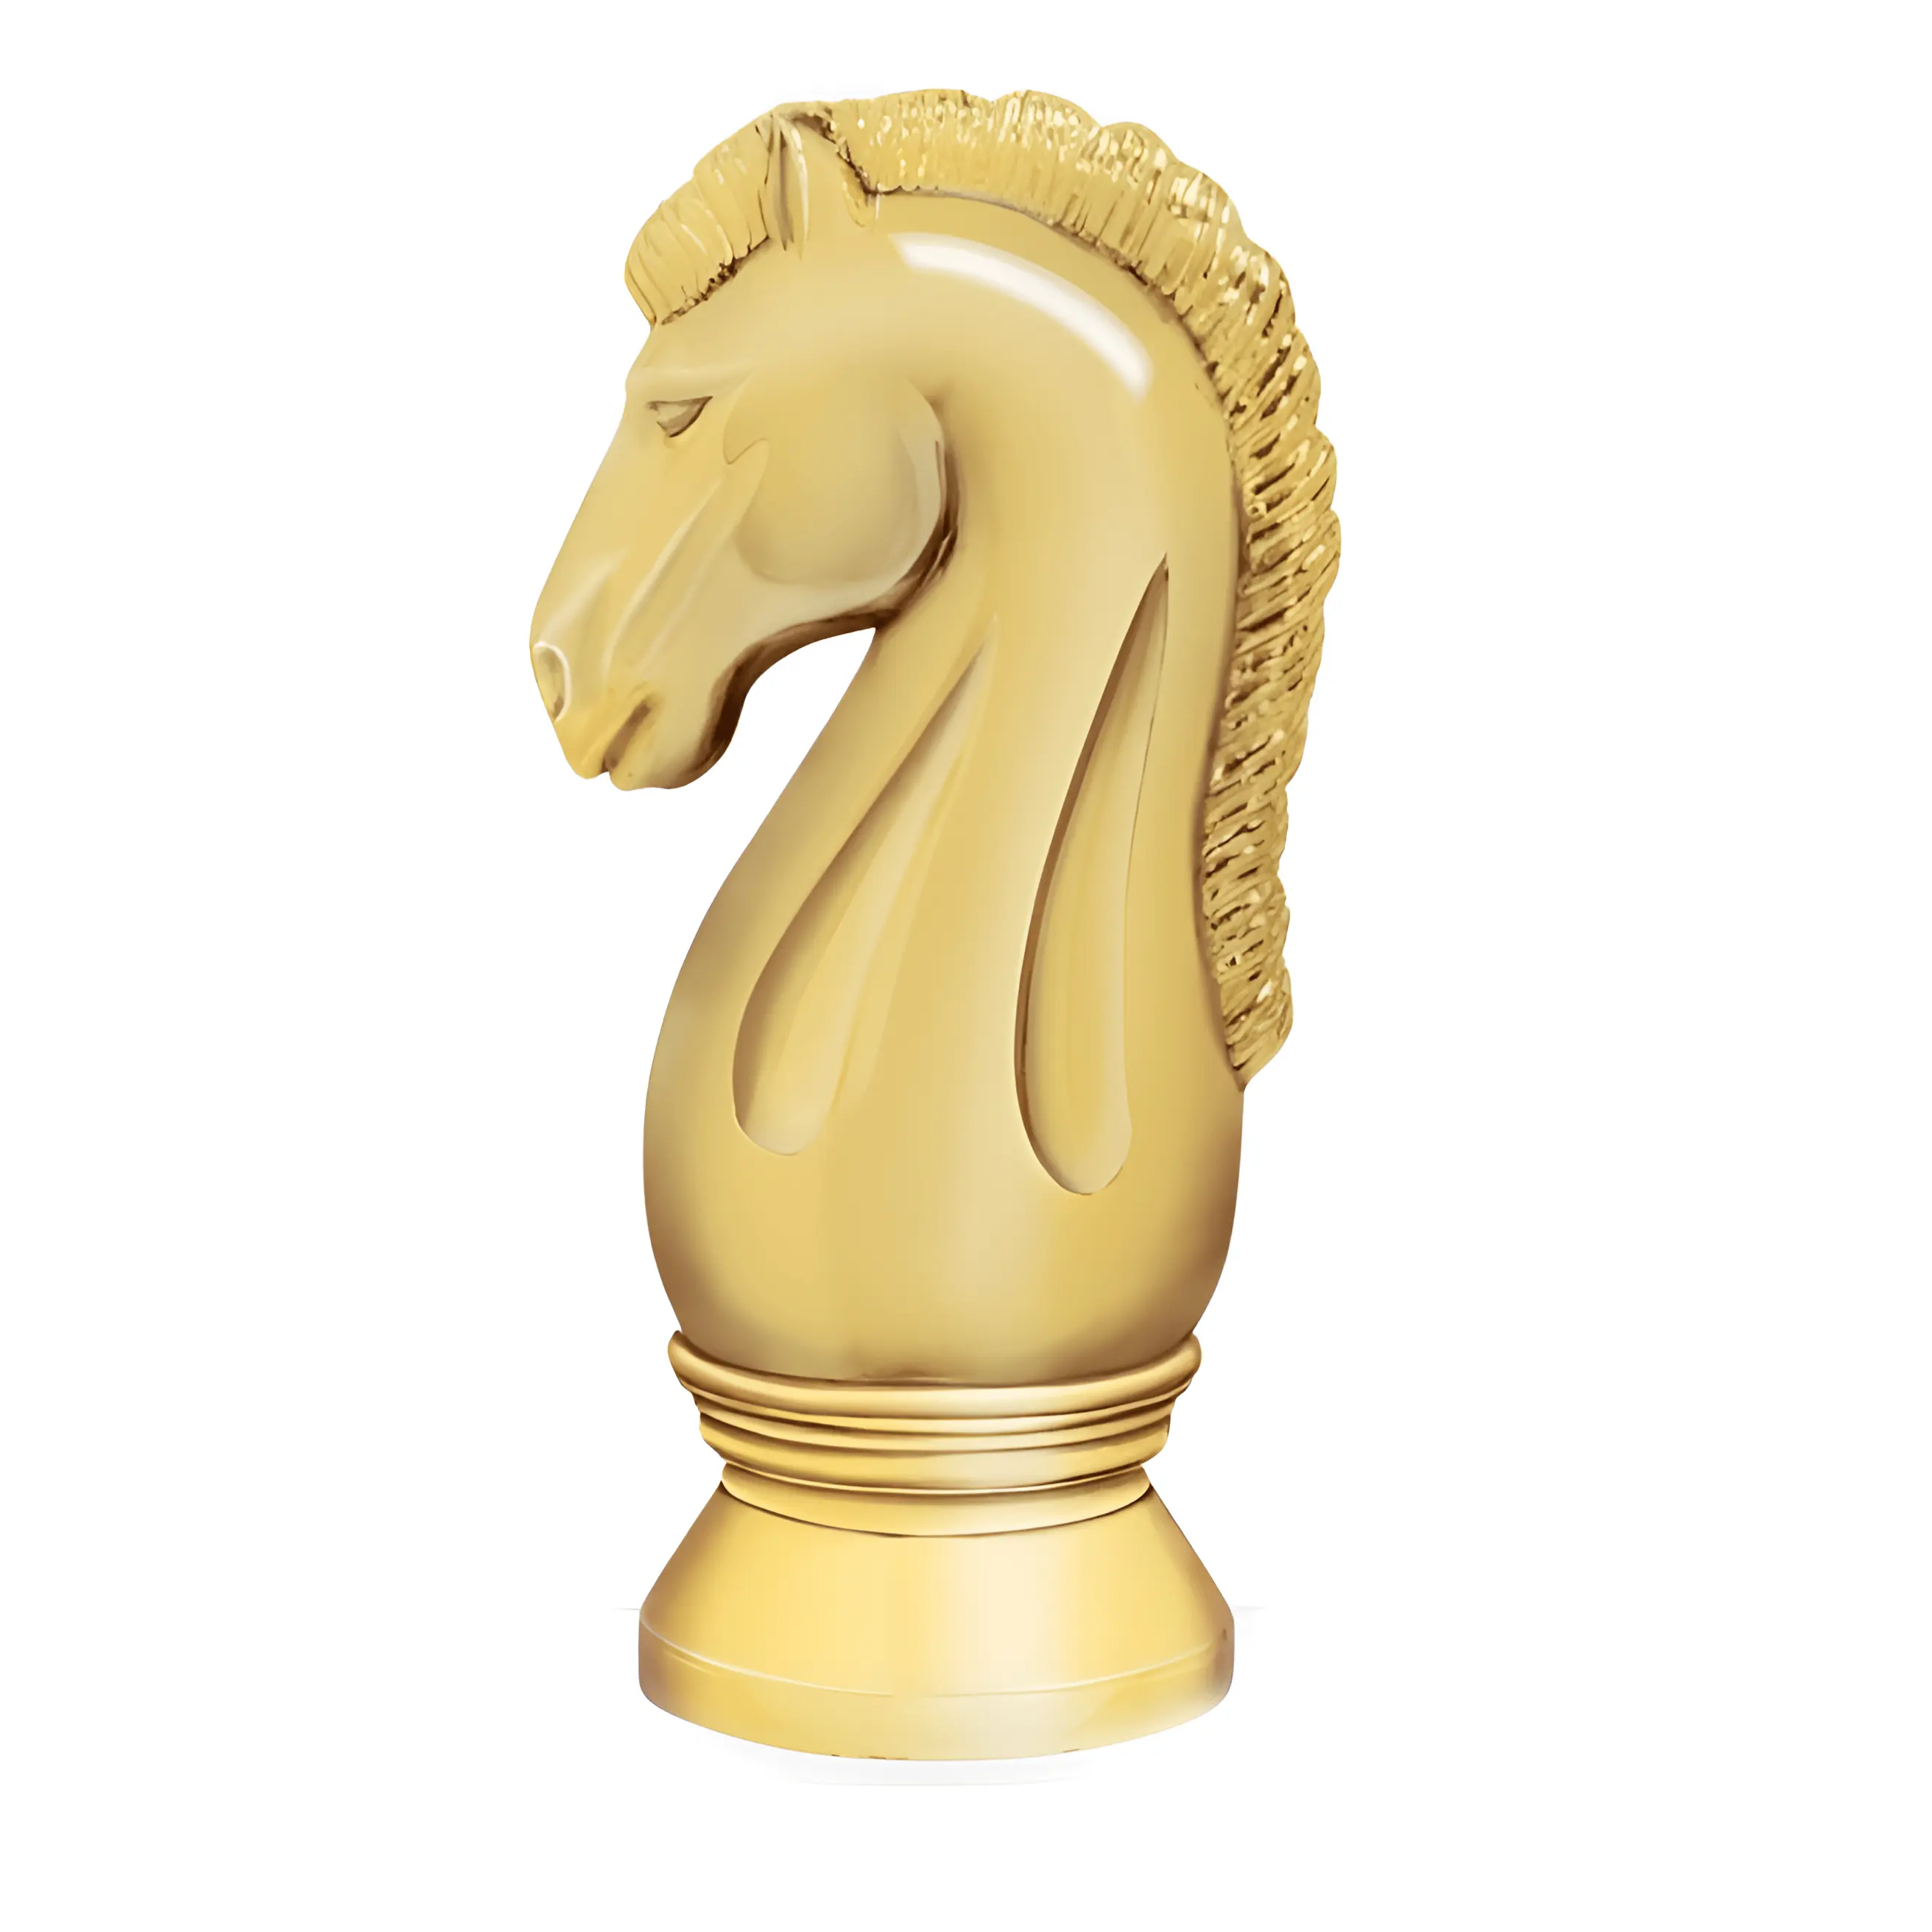 Noble venta al por mayor barato plástico ajedrez caballo accesorios adornos logro escuela graduación deportes trofeo Premio regalo de negocios